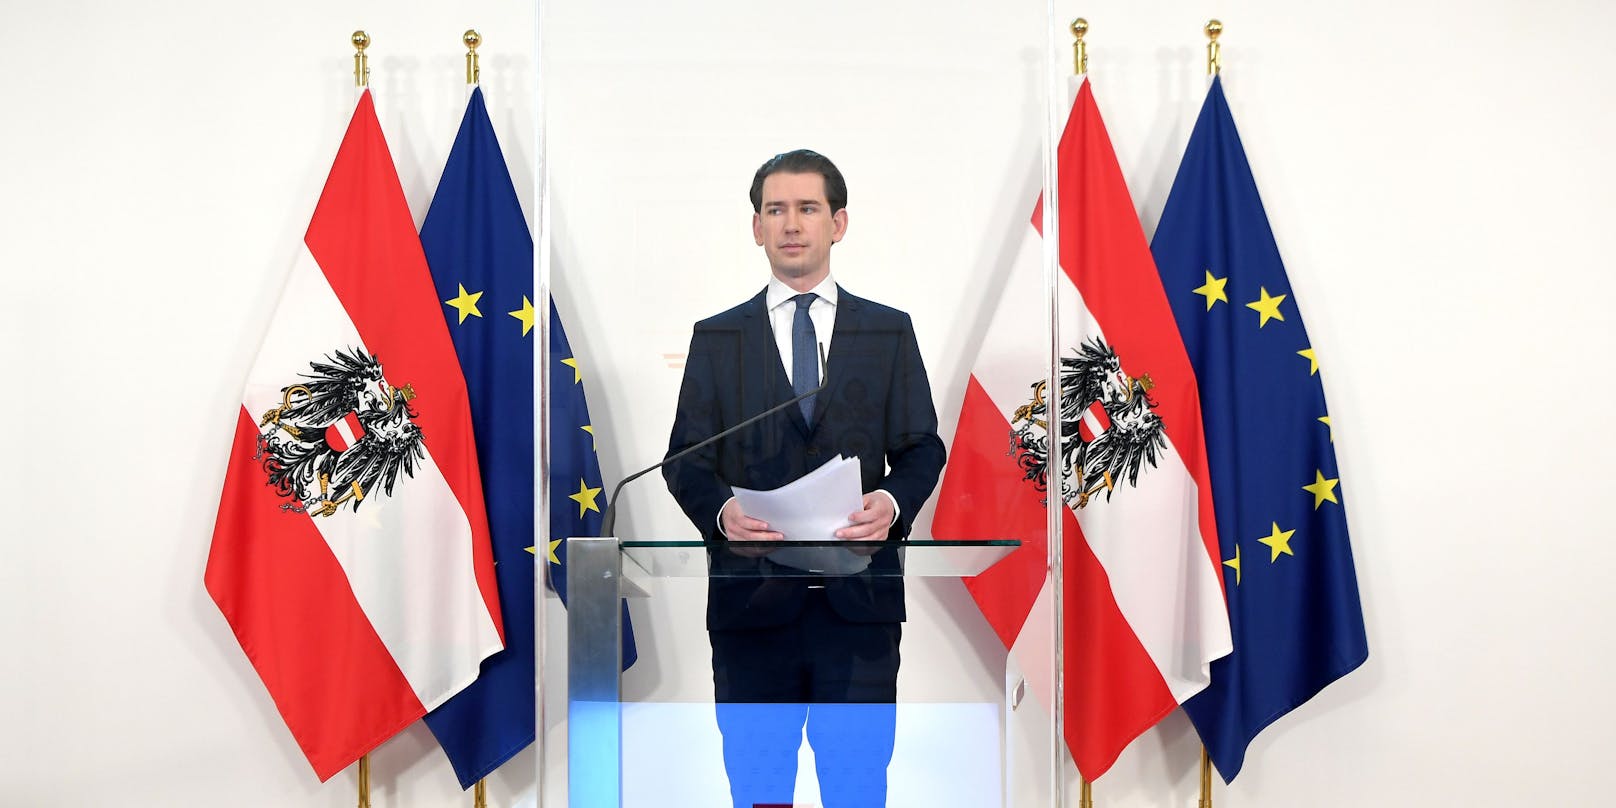 Bundeskanzler Sebastian Kurz (ÖVP) im Rahmen einer PK mit dem Titel "Impfstofflieferungen der EU" am Freitag, 12. März 2021, in Wien.